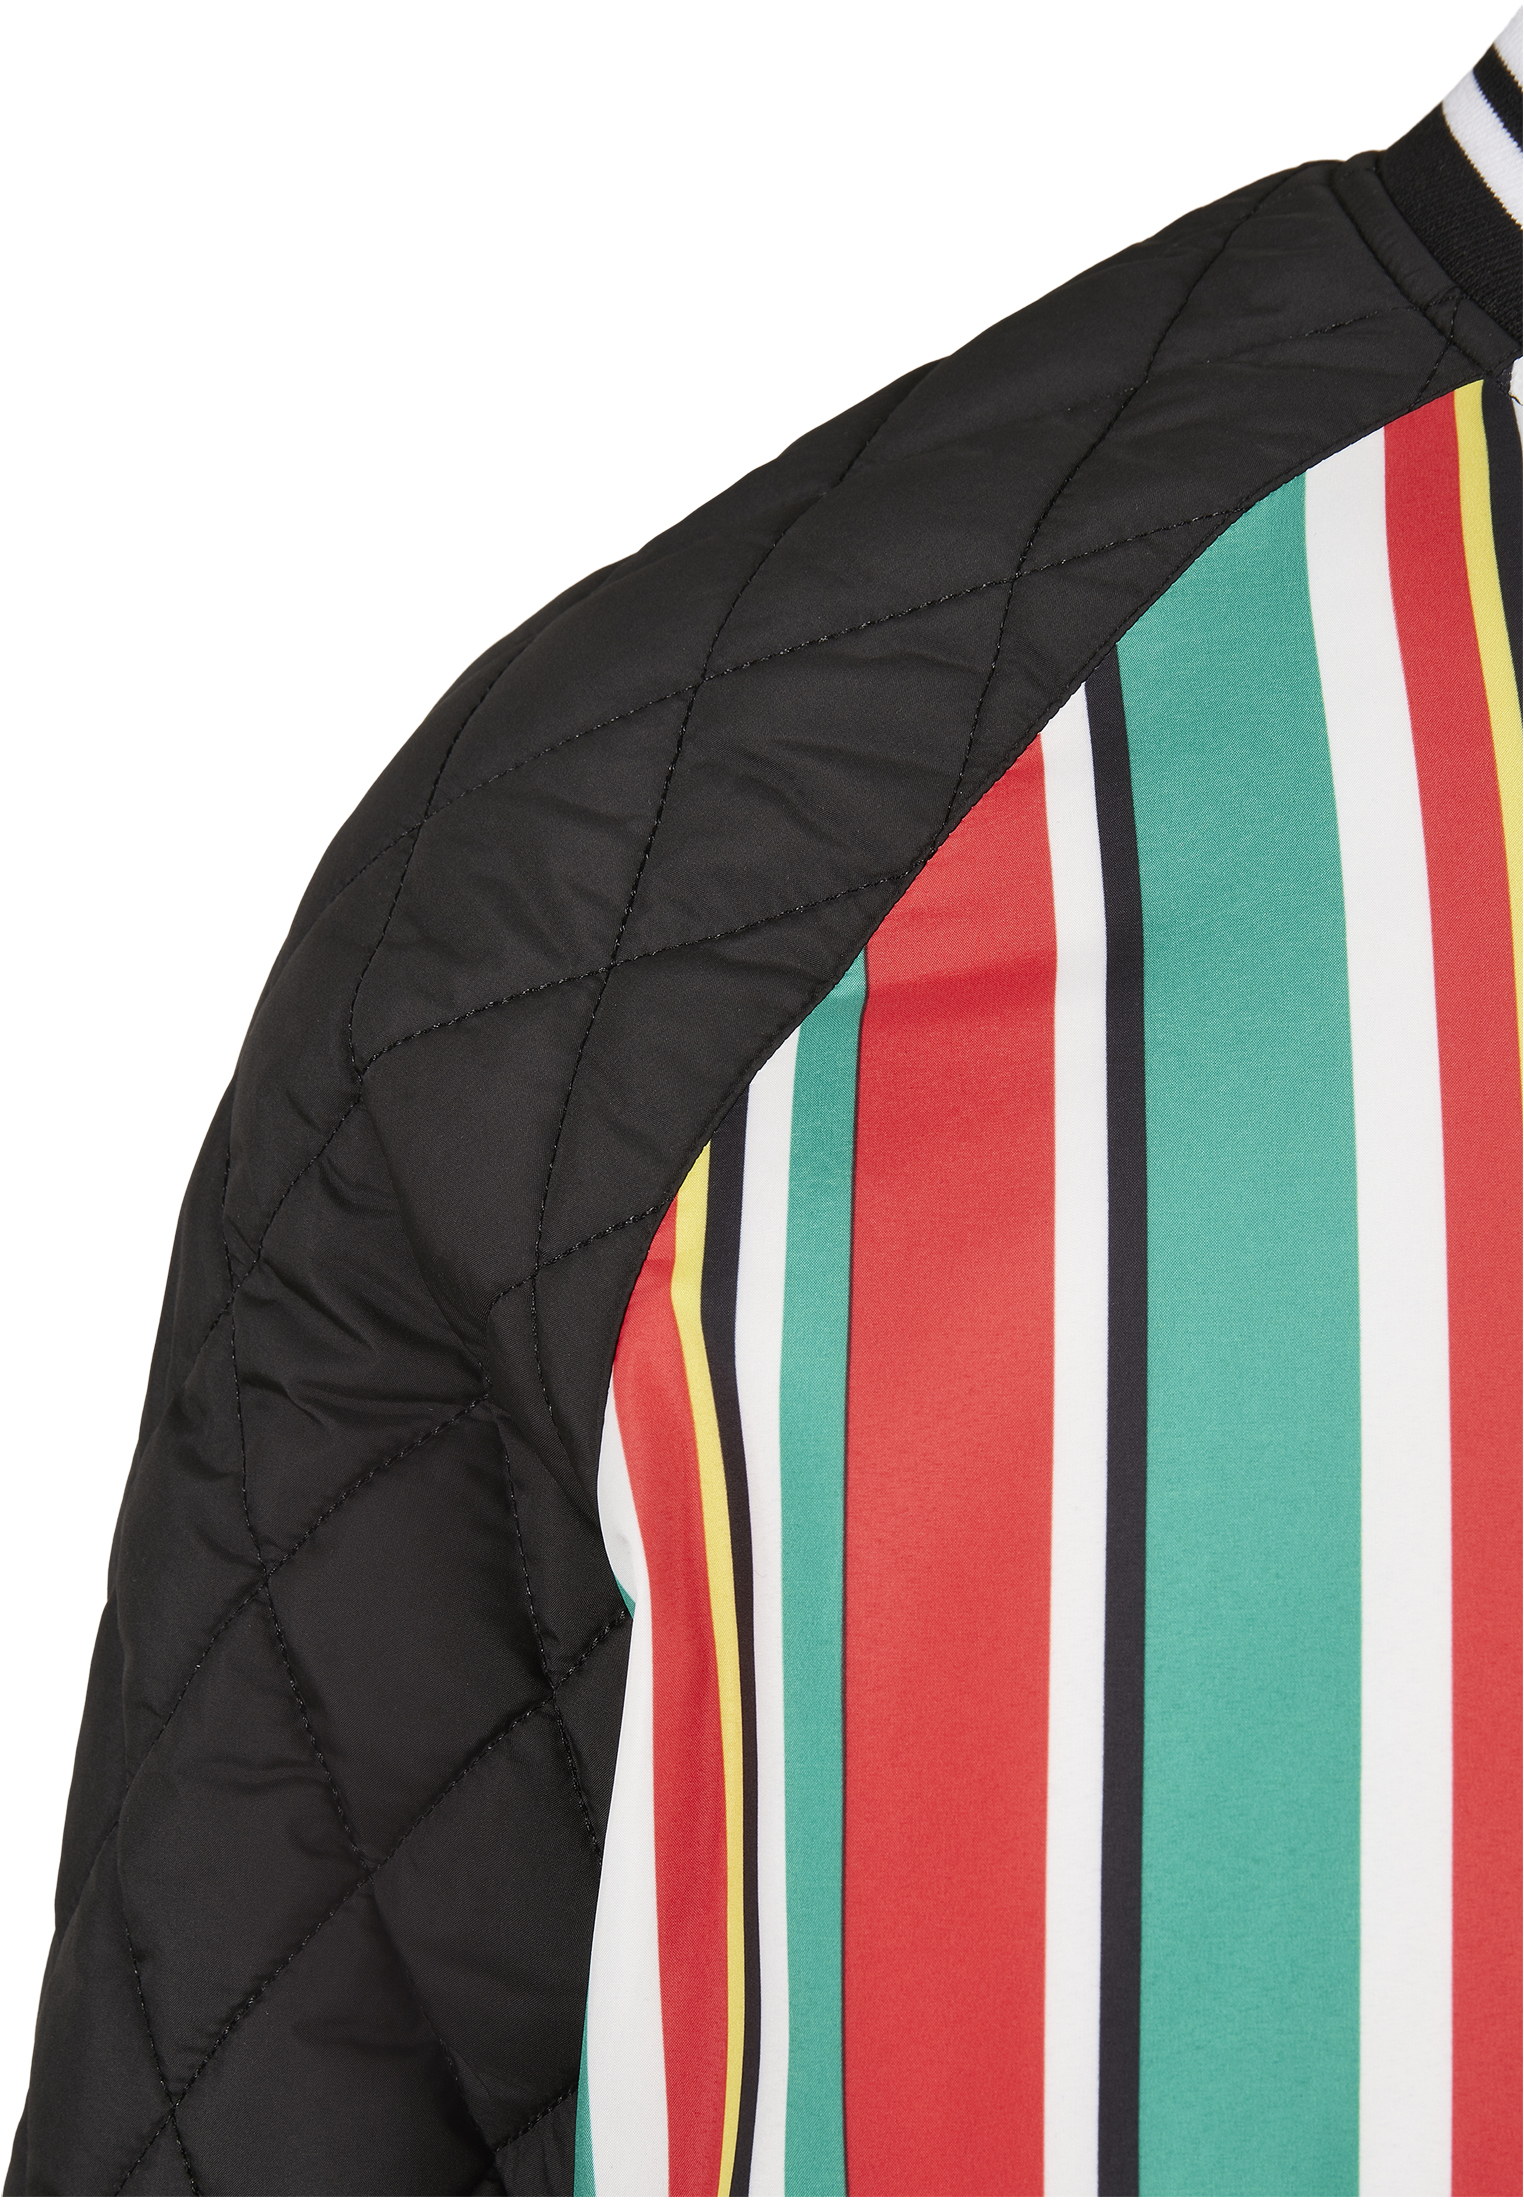 Saisonware Southpole Stripe College Jacket in Farbe multicolor